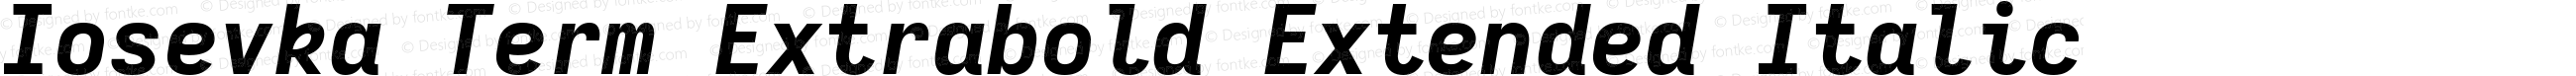 Iosevka Term Extrabold Extended Italic